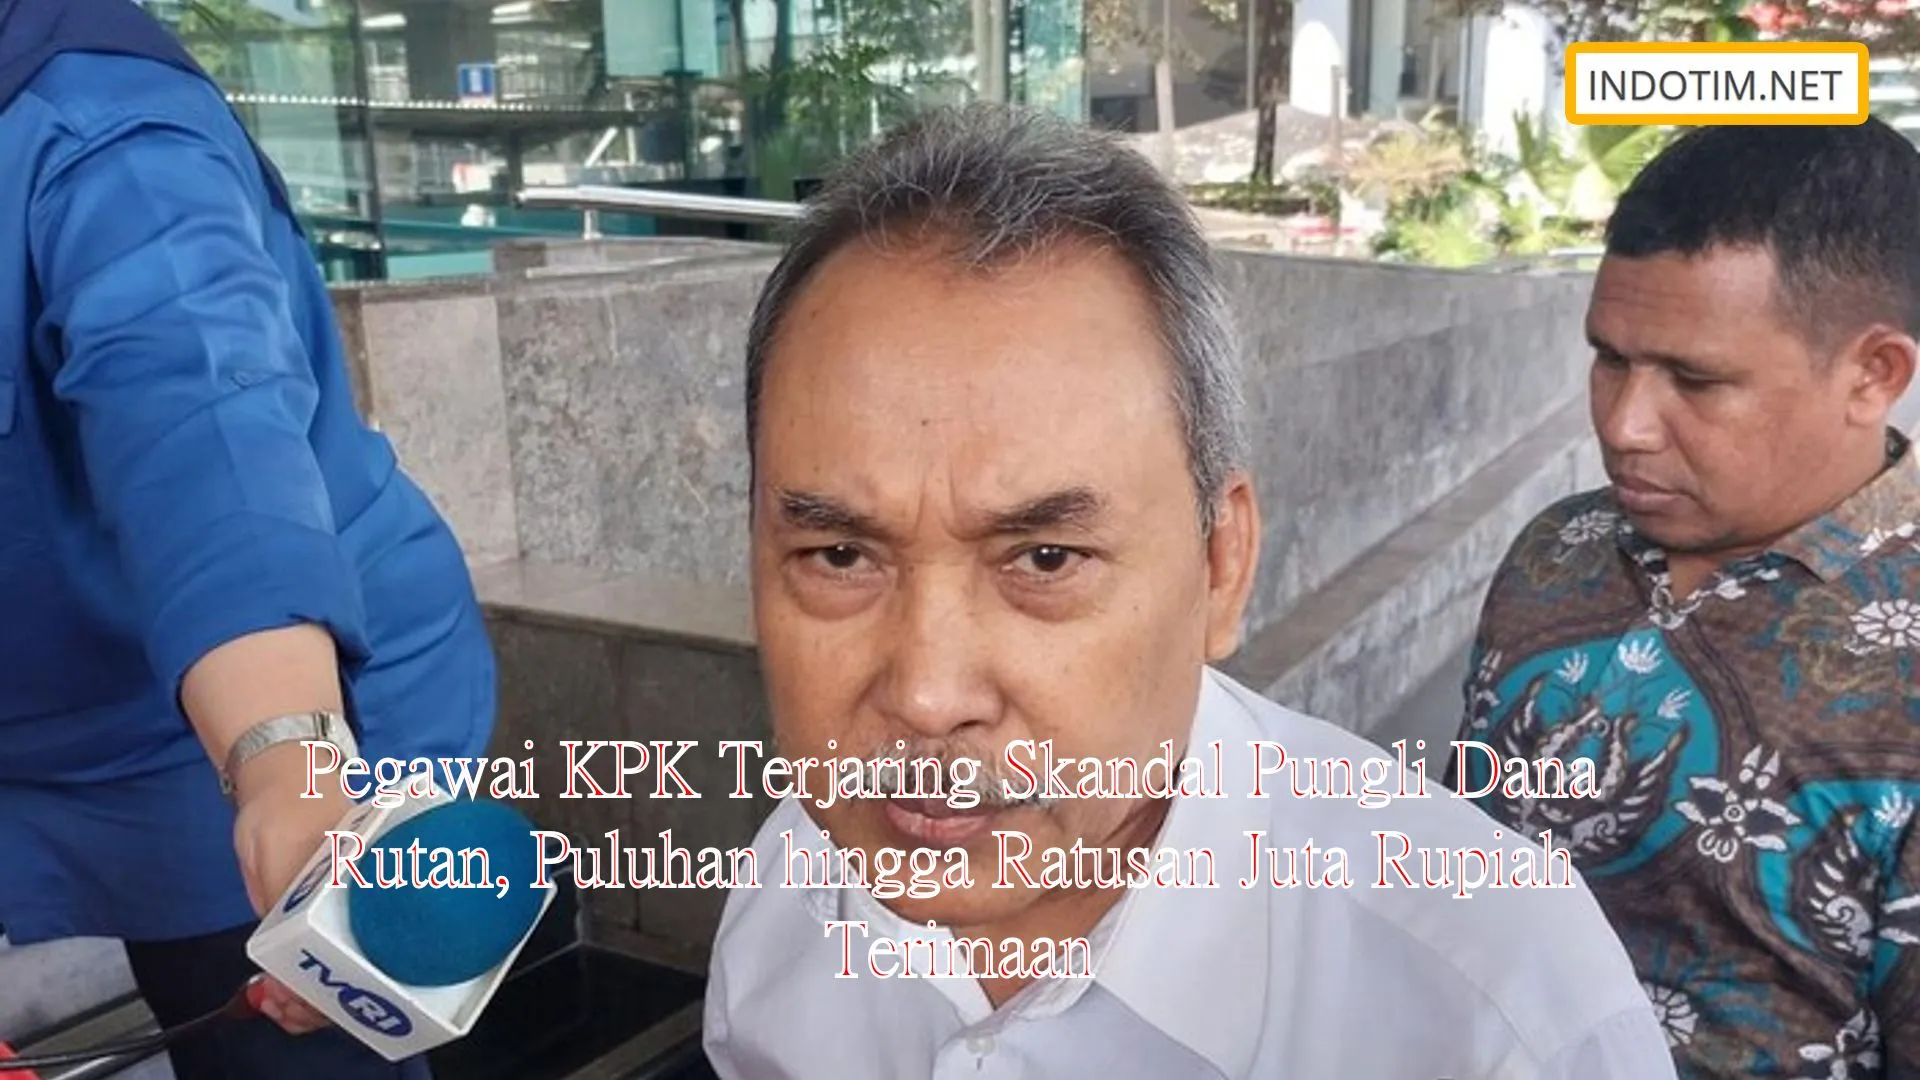 Pegawai KPK Terjaring Skandal Pungli Dana Rutan, Puluhan hingga Ratusan Juta Rupiah Terimaan